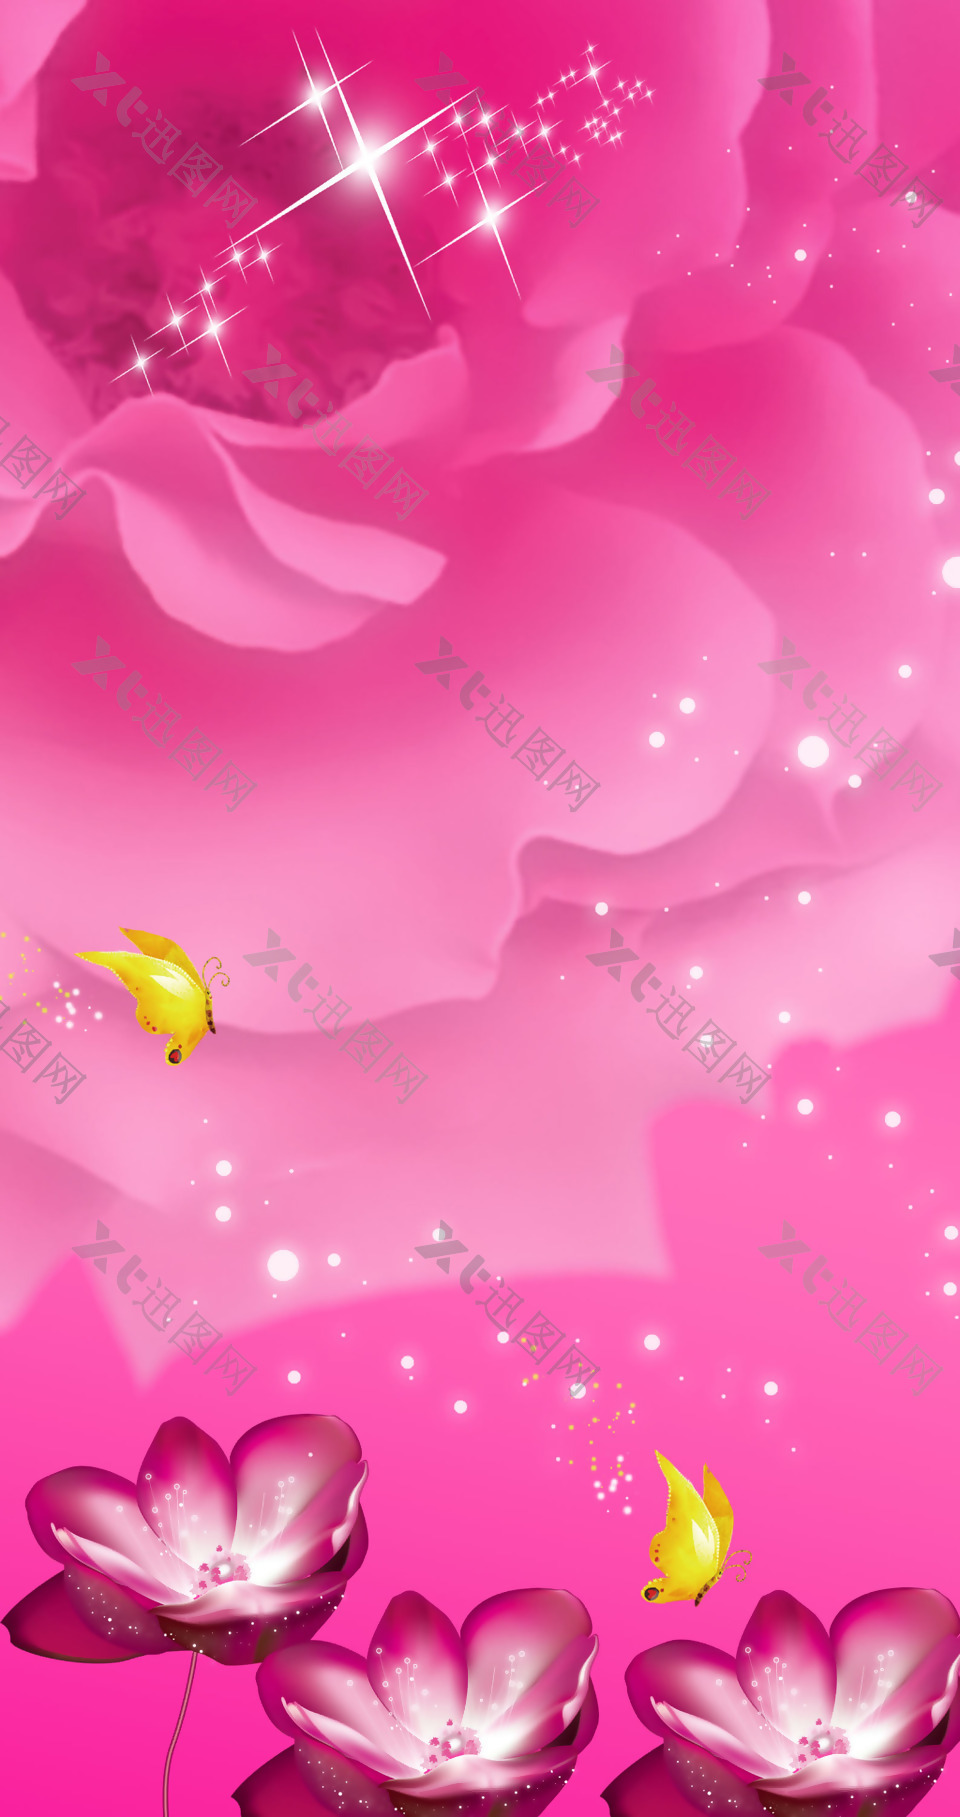 玫瑰蝴蝶星光熠熠粉色背景